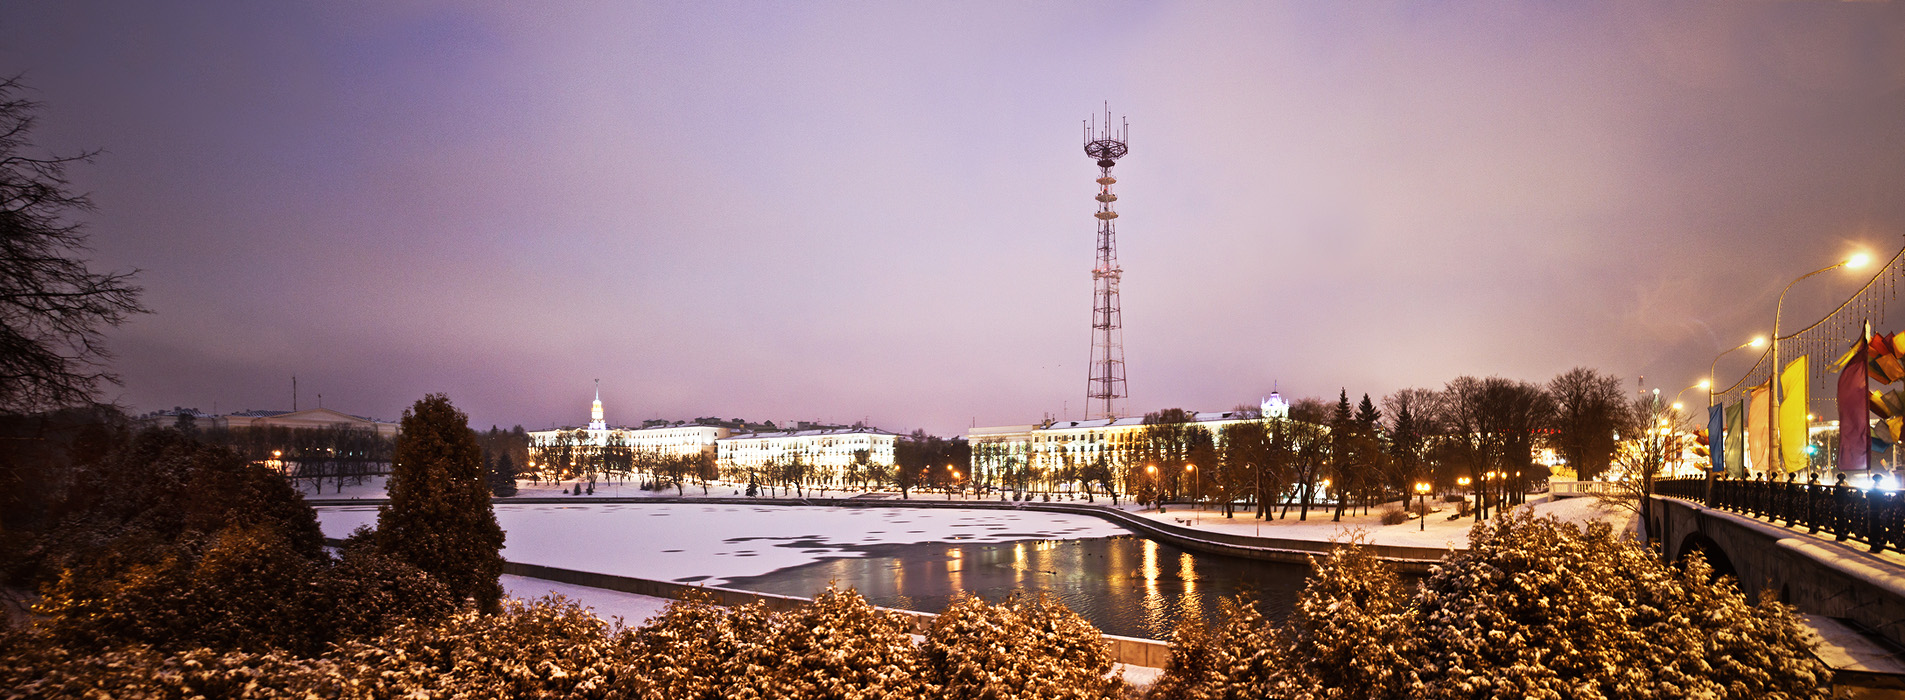 Минск фото города панорама зима